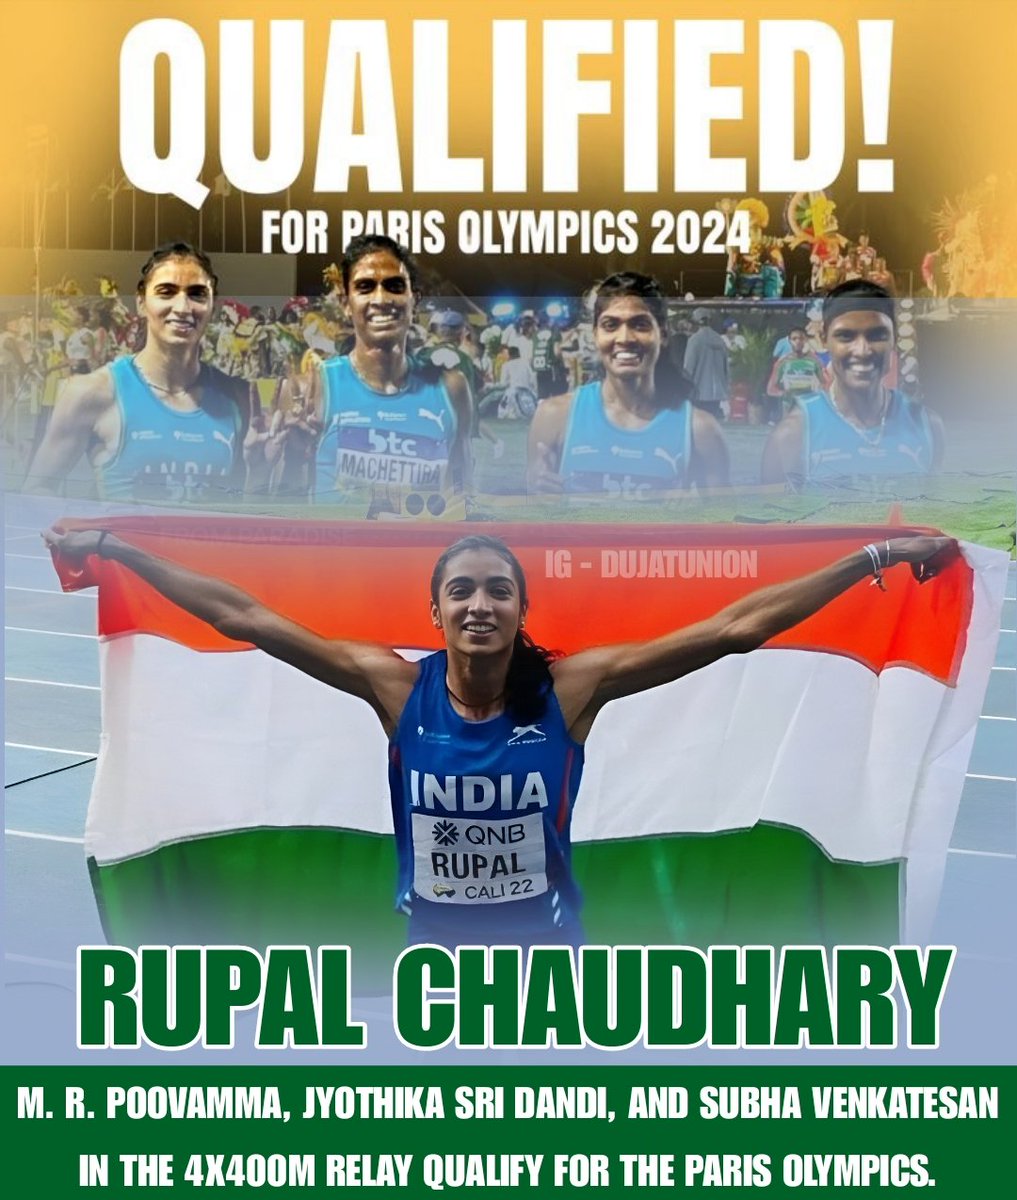 पेरिस ओलंपिक दौड़ेगी किसान की बेटी 🇮🇳 मेरठ के गांव जैनपुर से गन्ना किसान ओमबीर चौधरी की बेटी भारतीय धावक रूपल चौधरी (झज्ज) ने अपनी साथियों एम. आर. पूवम्मा,ज्योतिका श्री दांडी और सुभा वेंकटेशन के साथ भारत को 4×400 मीटर रिले दौड़ में 🇮🇳 के लिए ओलंपिक कोटा जीता सभी को शुभकामनाए 🇮🇳